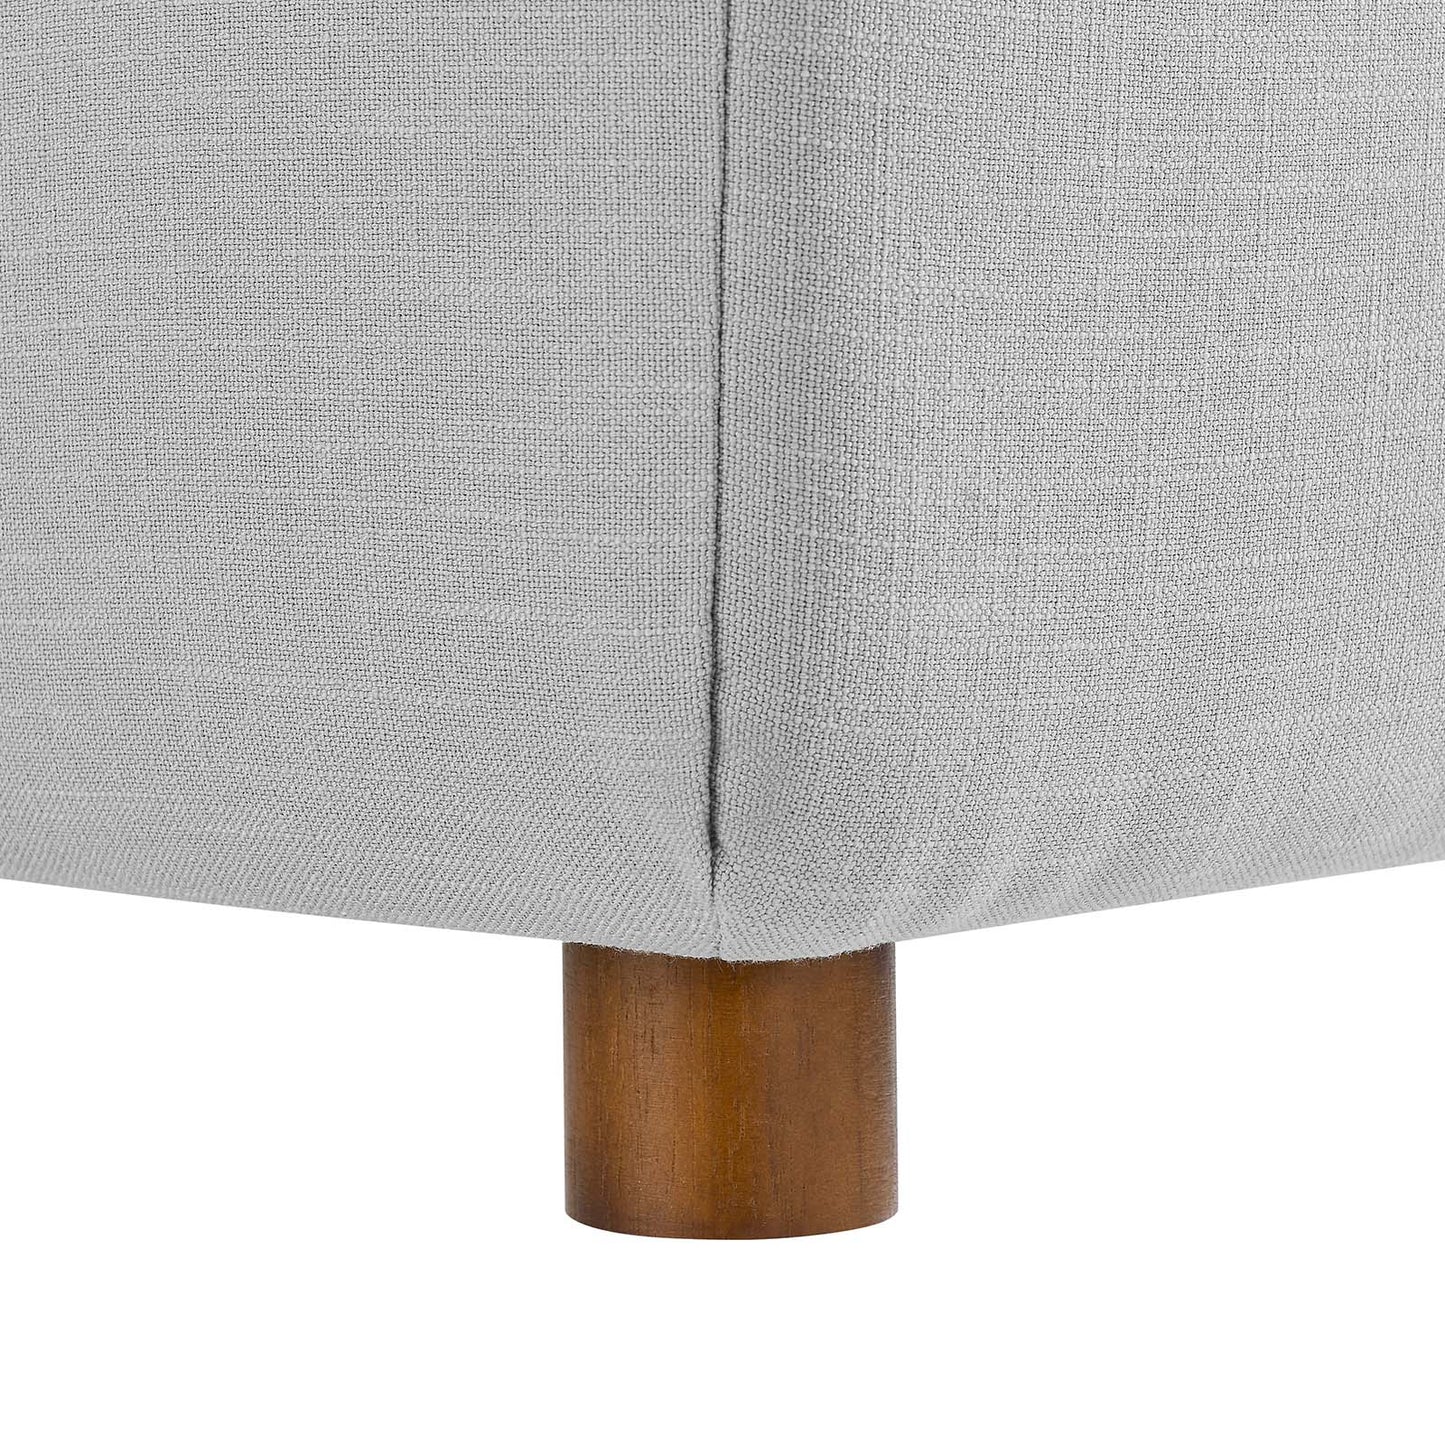 Commix Down Filled Overstuffed 6-Piece Sectional Sofa Light Gray EEI-5761-LGR